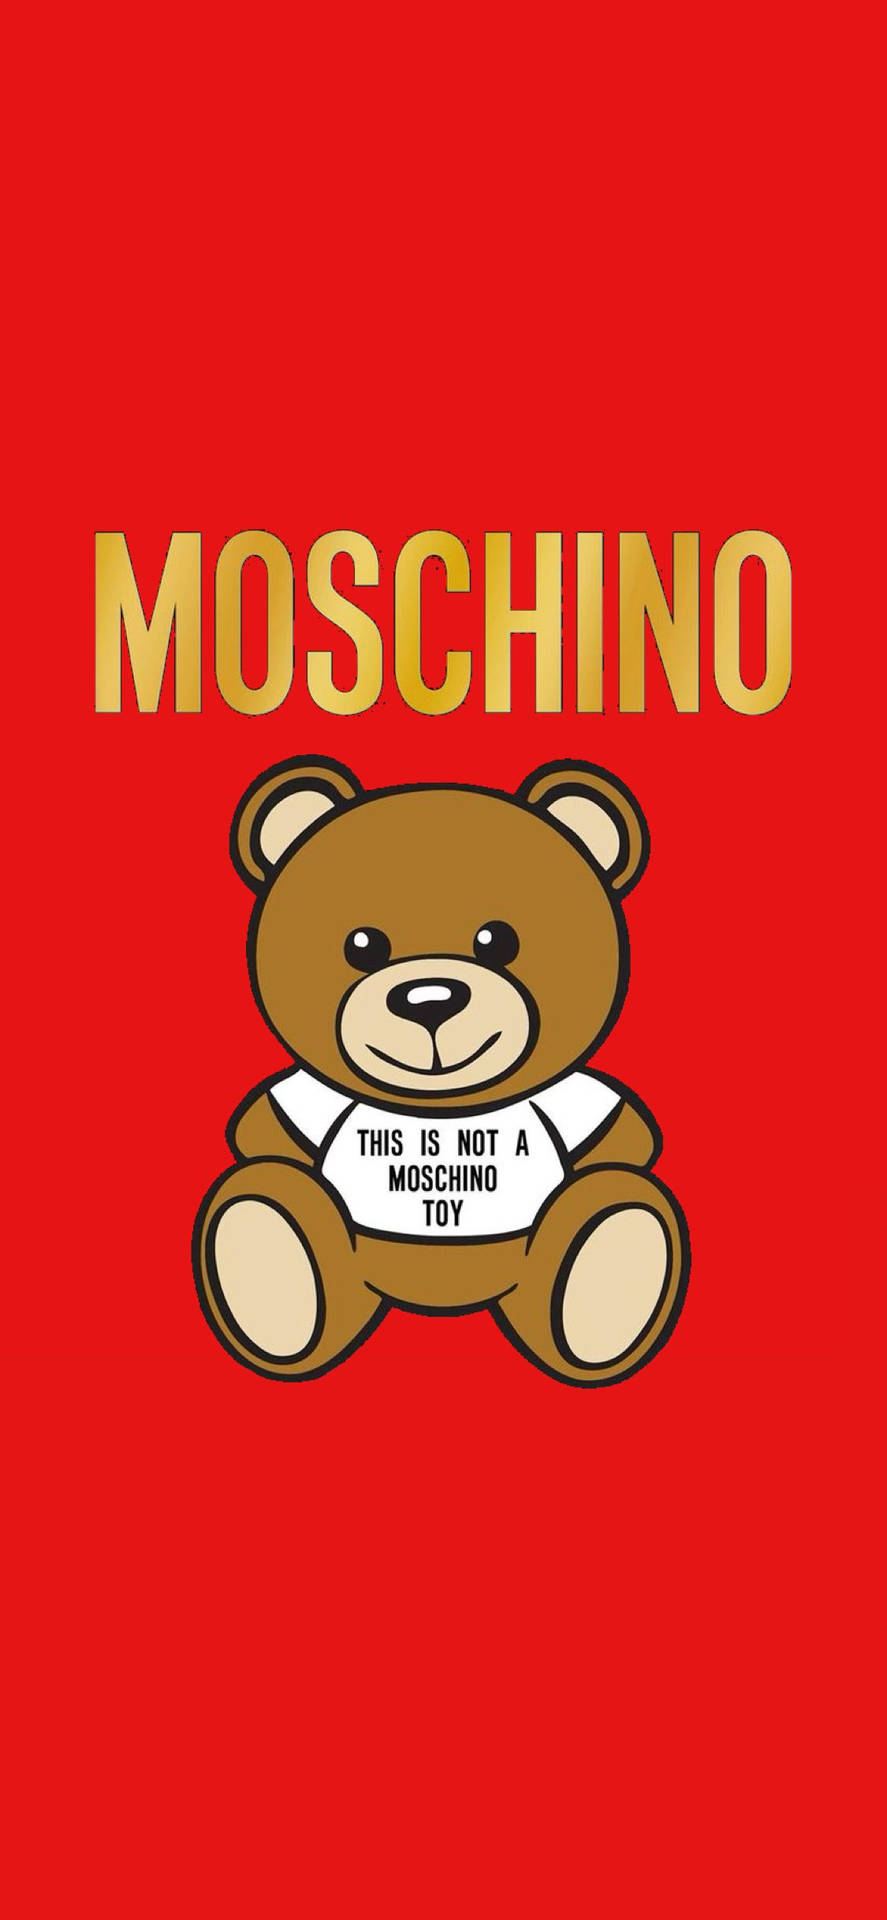 Free Moschino Pictures: Bạn muốn tìm kiếm những bức ảnh đẹp, phù hợp với sở thích của mình mà không tốn một khoản phí nào? Hãy truy cập ngay vào bộ sưu tập Free Moschino Pictures của Moschino. Với nhiều lựa chọn phong phú và đáp ứng mọi yêu cầu của bạn.